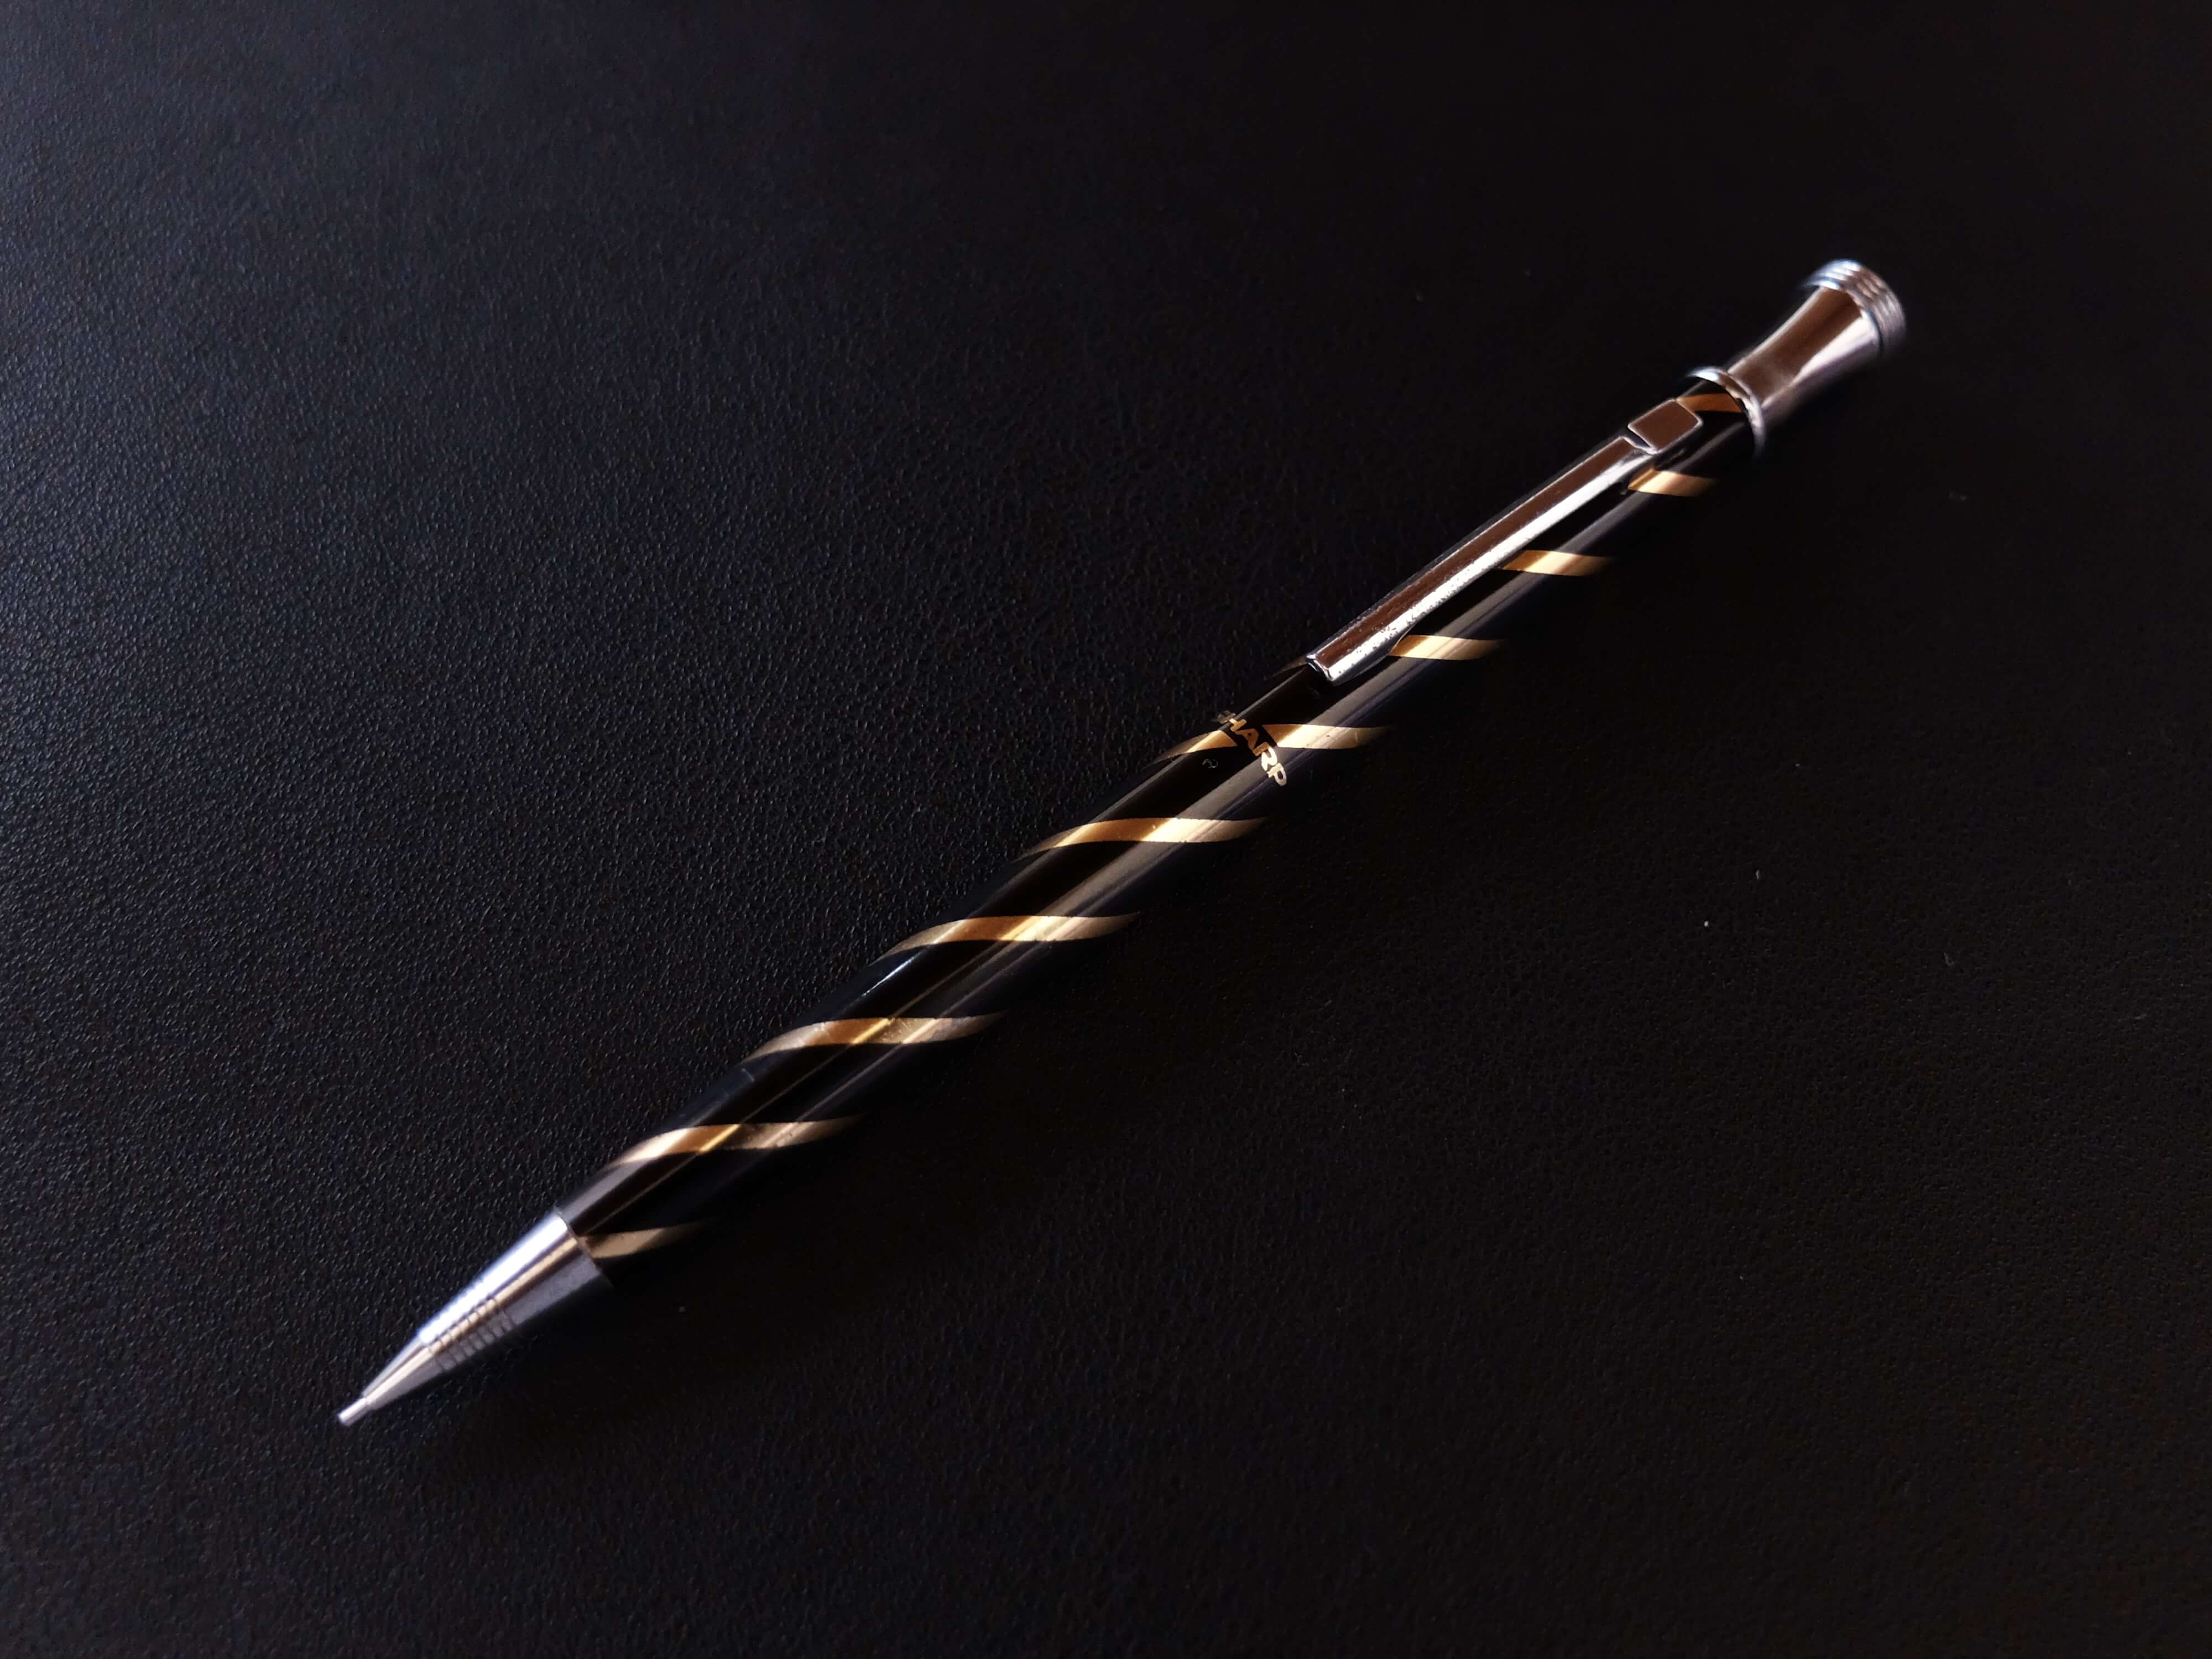 幻の名品 限定復刻 SHARP シャープ 早川式繰出鉛筆 というシャープペンシル – 文房具という昔から変わらない身近な道具